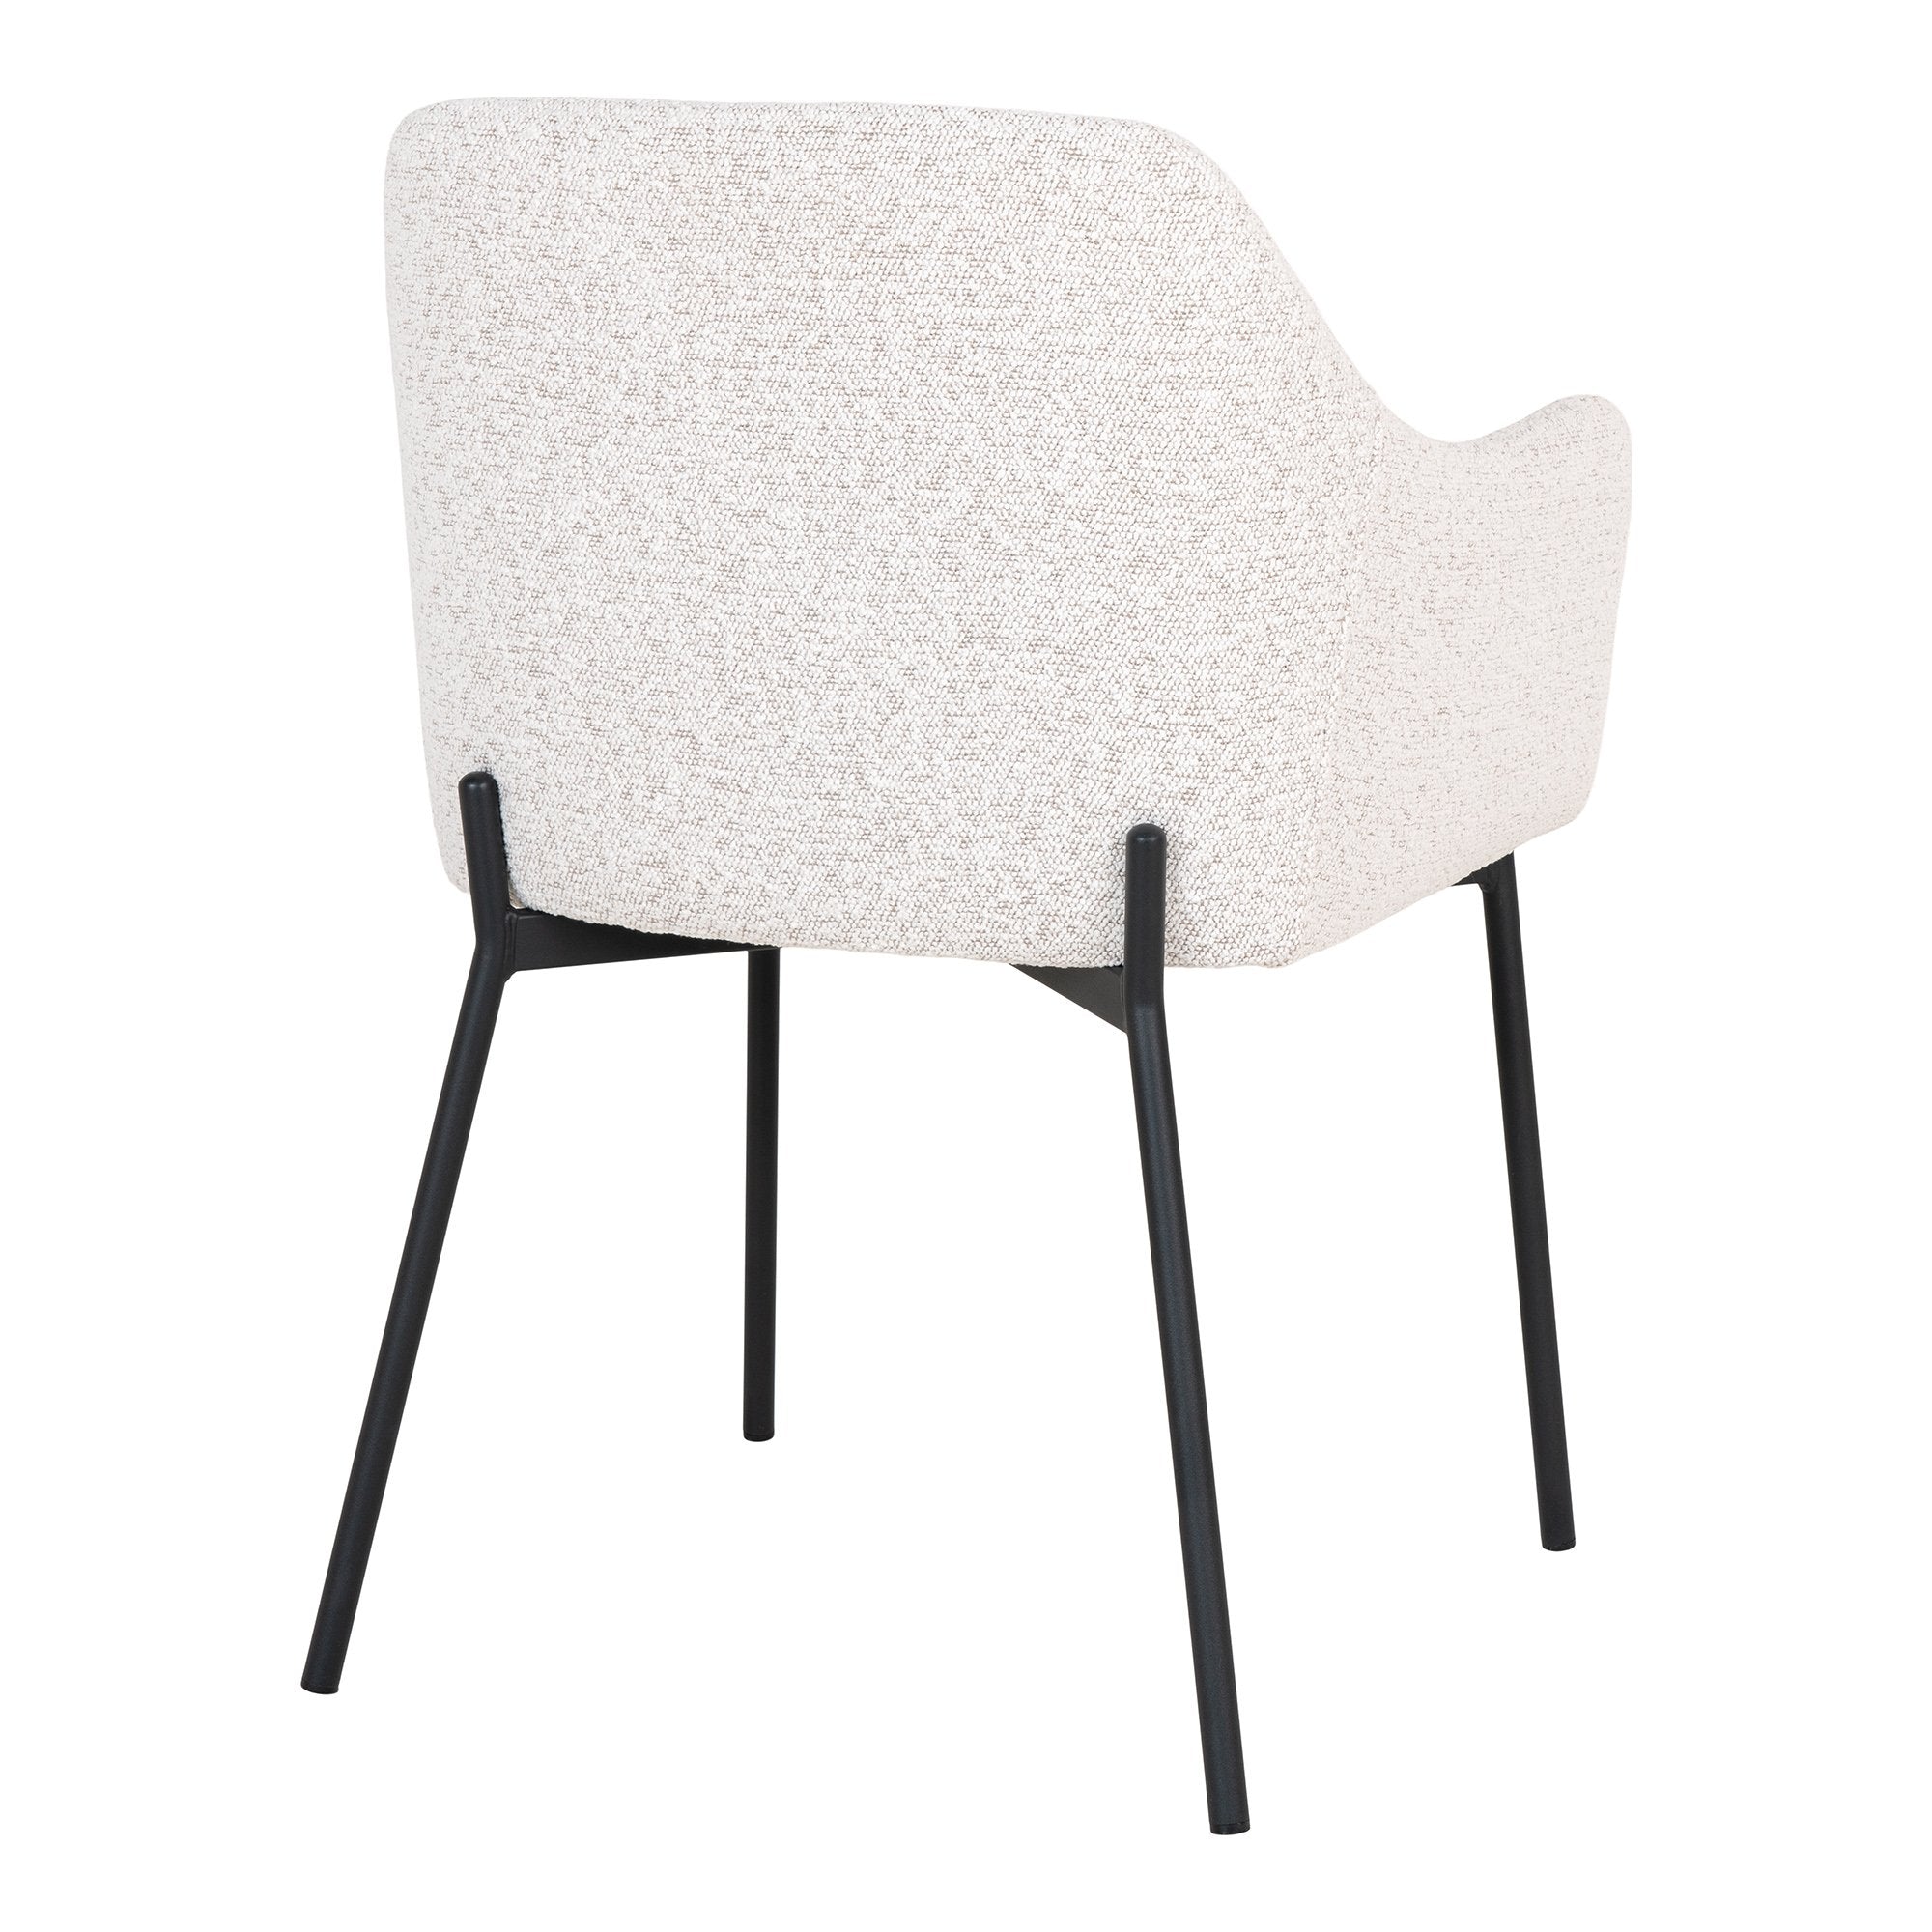 Melilla Spisebordsstol - Spisebordsstol, Hvid Bouclé Med Sorte Ben, Hn1270 ⎮ Sæt af 2 stk. ⎮ 5713917027538 ⎮ 1001215 